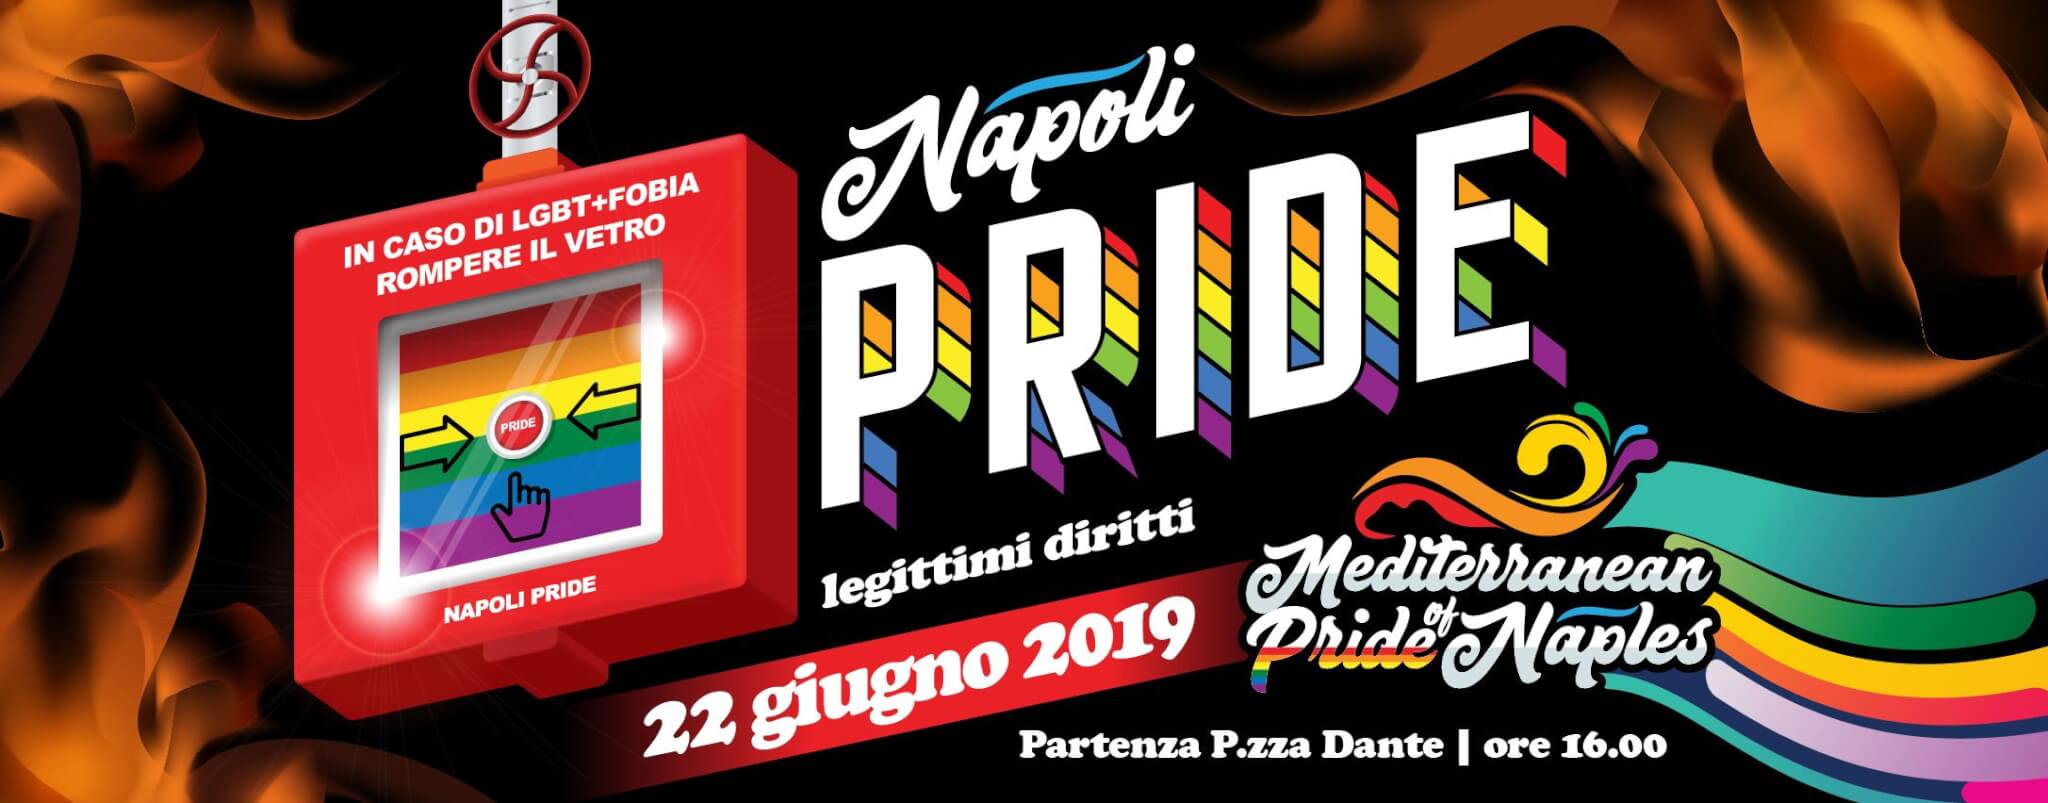 Onda Pride 2019, è il giorno di Napoli, Bologna, Siracusa e Frosinone - Mediterranean Pride of Naples - Gay.it